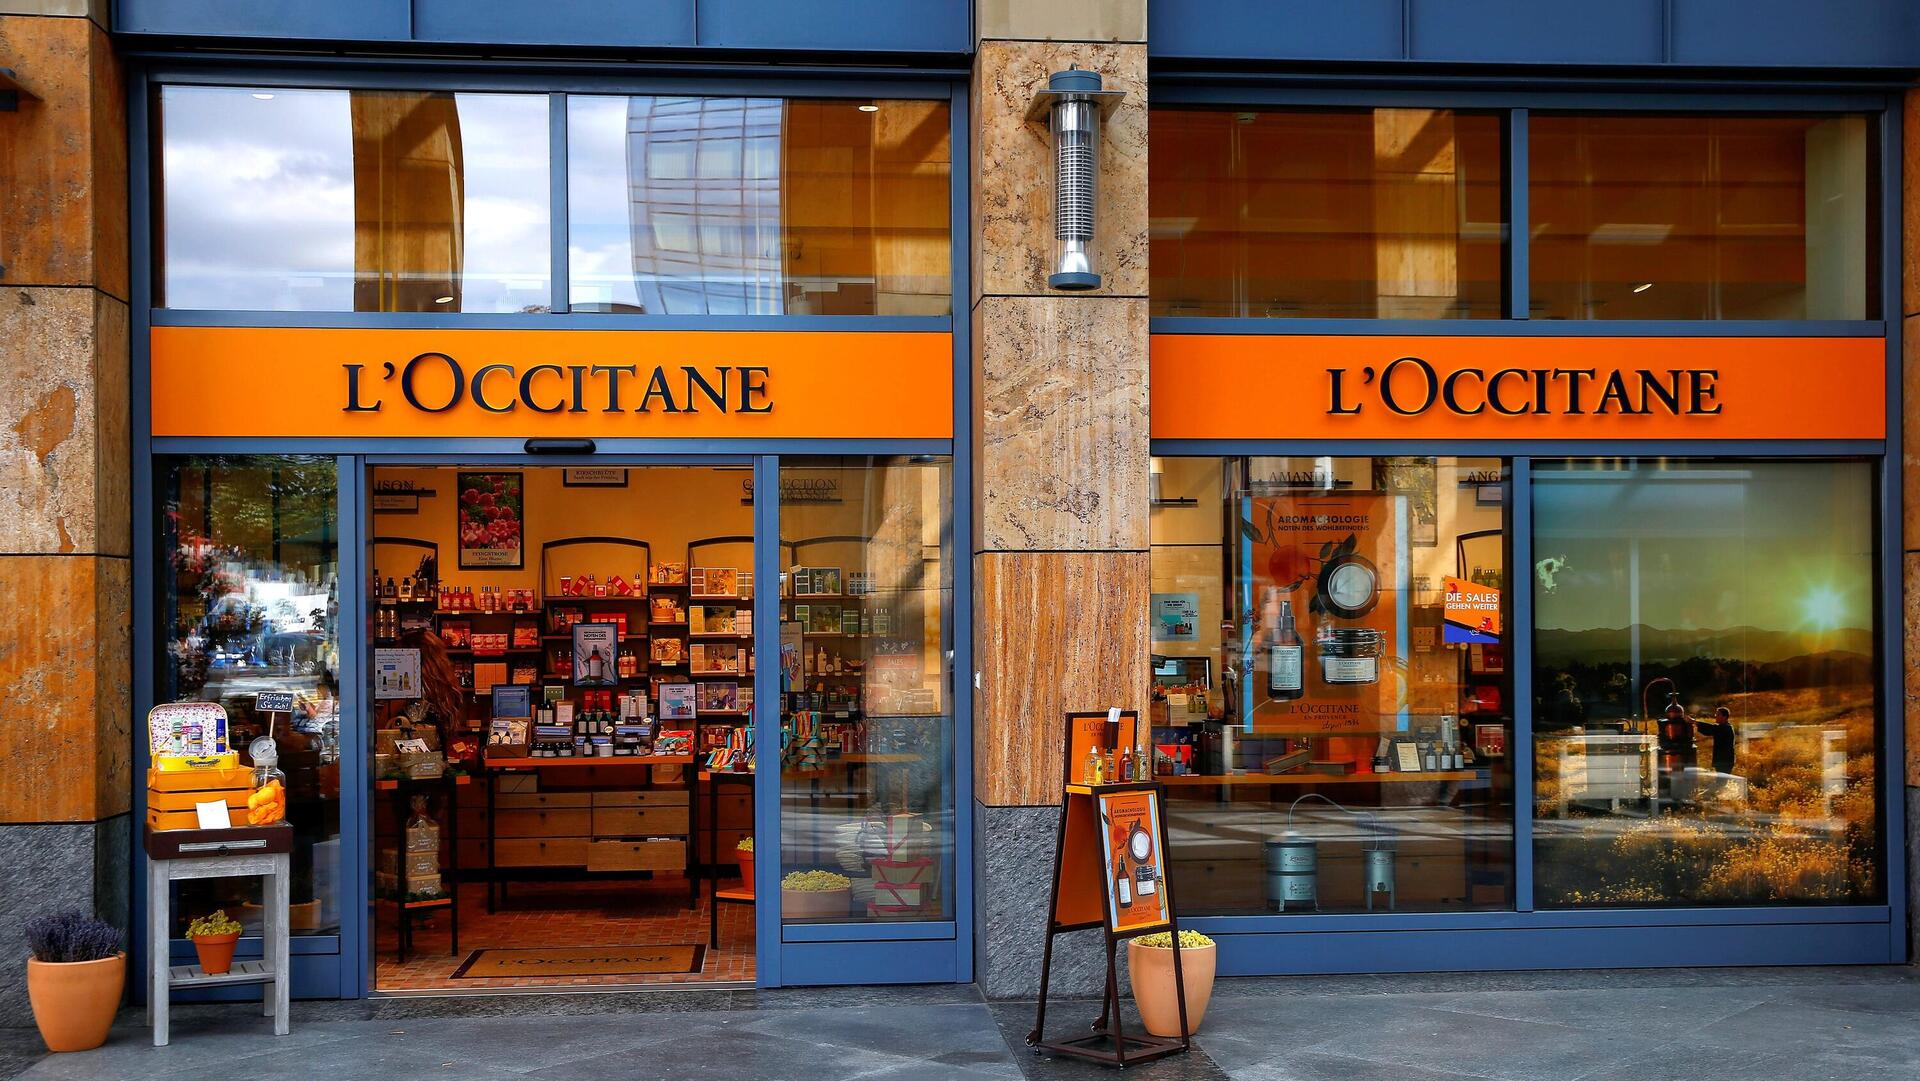 חנות של חברת קוסמטיקה ובשמים ל'וקסיטאן בעיירה צוג בשווייץ L'Occitane